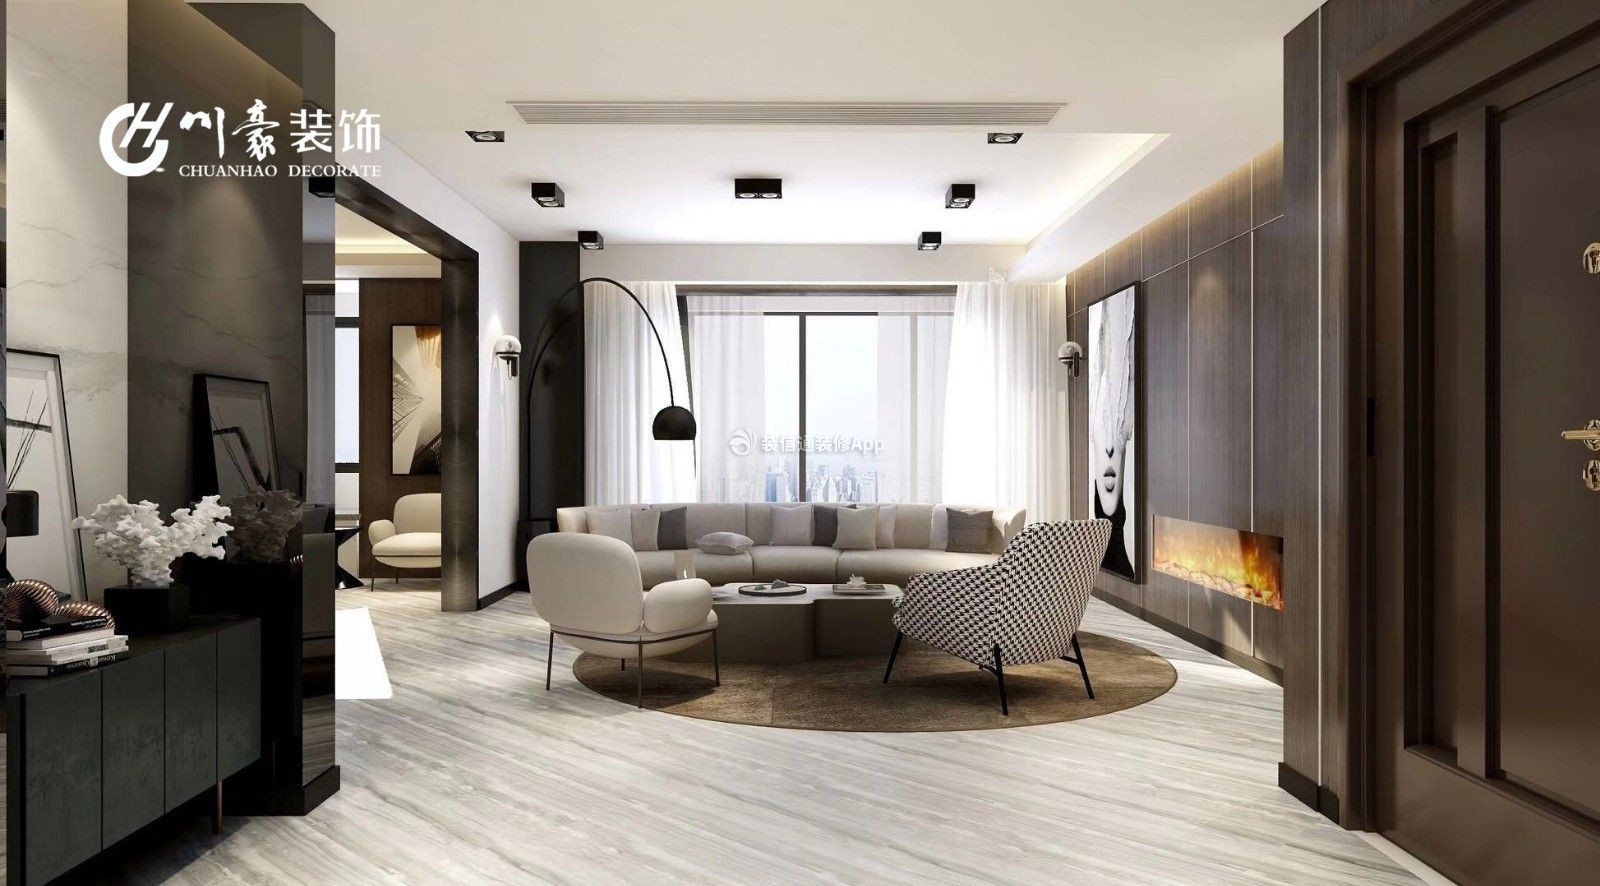 家装效果图 现代 置地双玺四居158平现代风格客厅半圆形沙发组设计